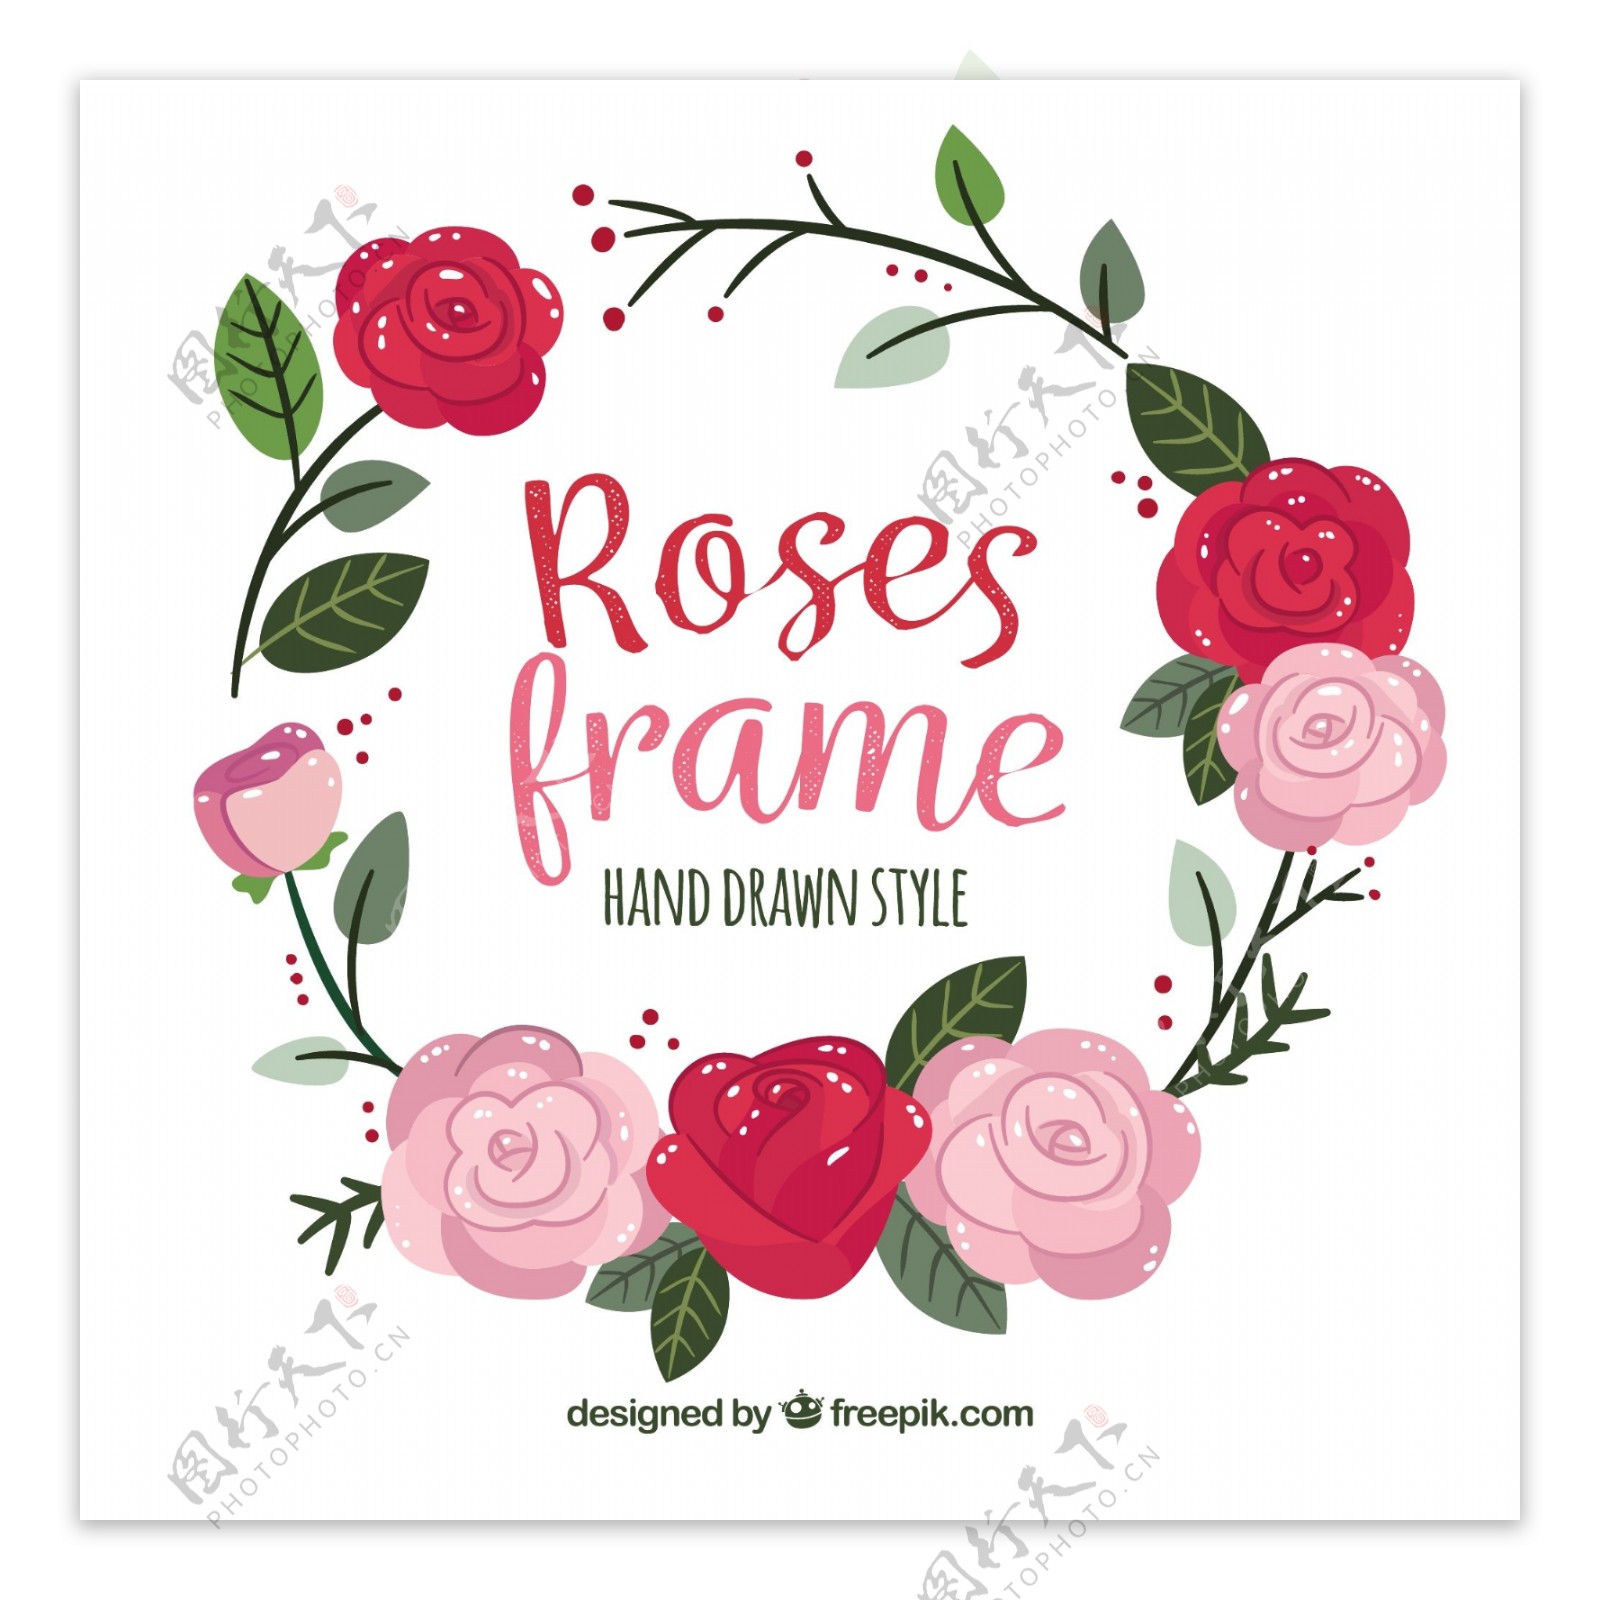 手绘风格玫瑰装饰图案边框背景矢量素材